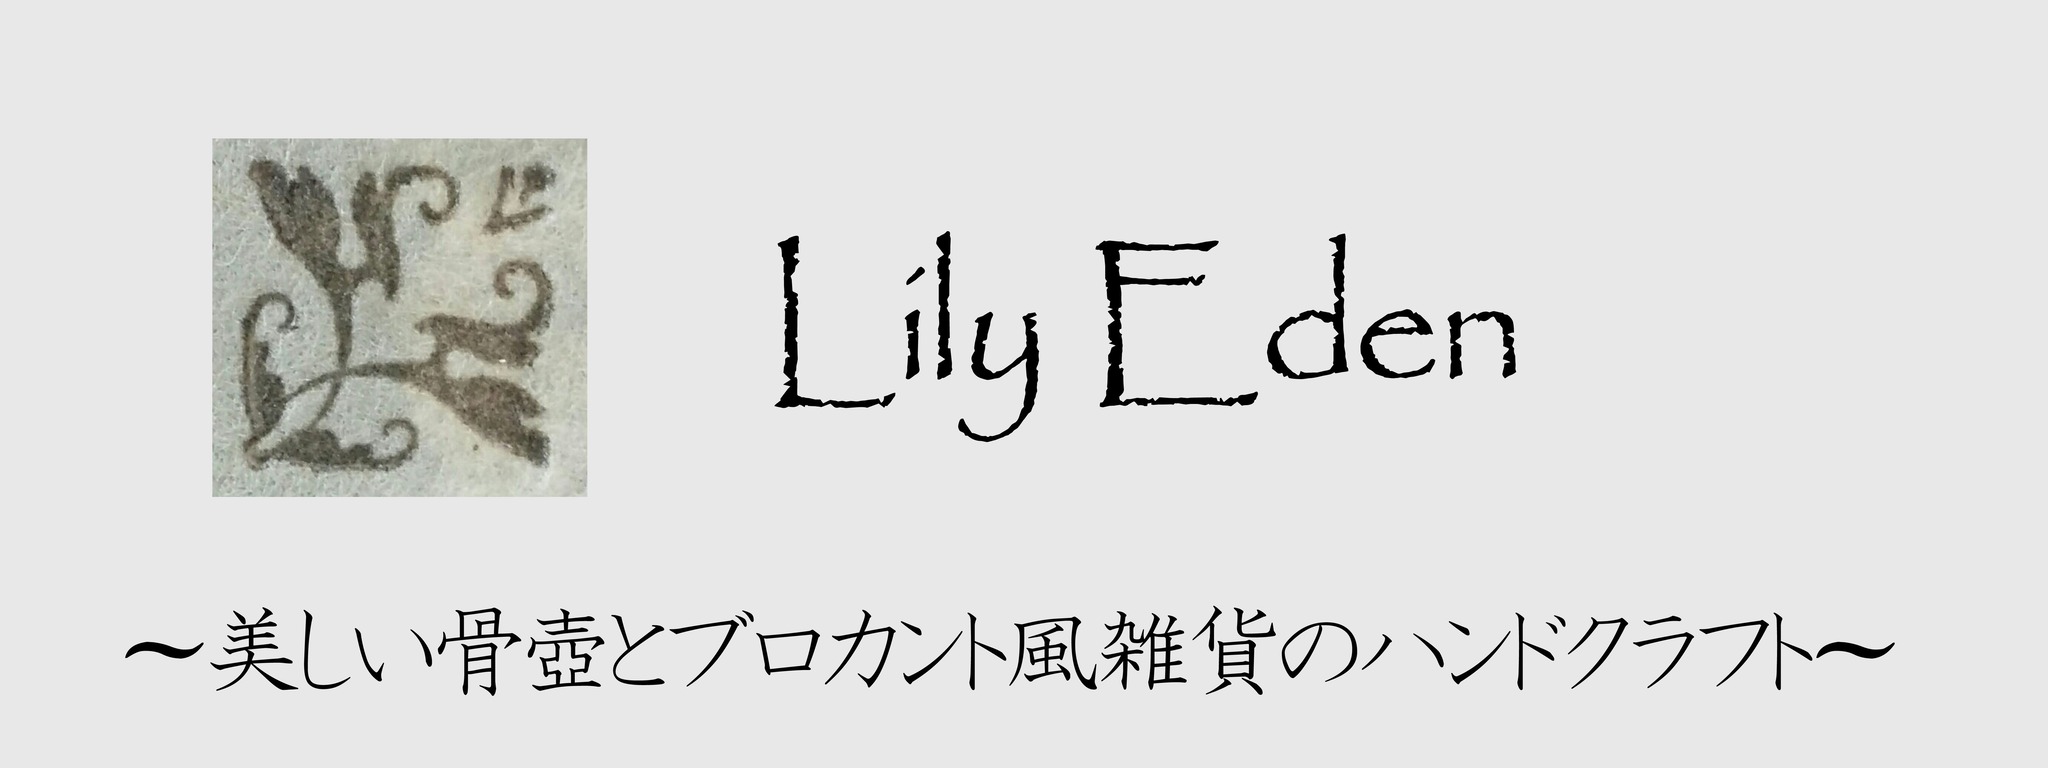 リリー・エデンの骨壺 〜アートアンドクラフト〜